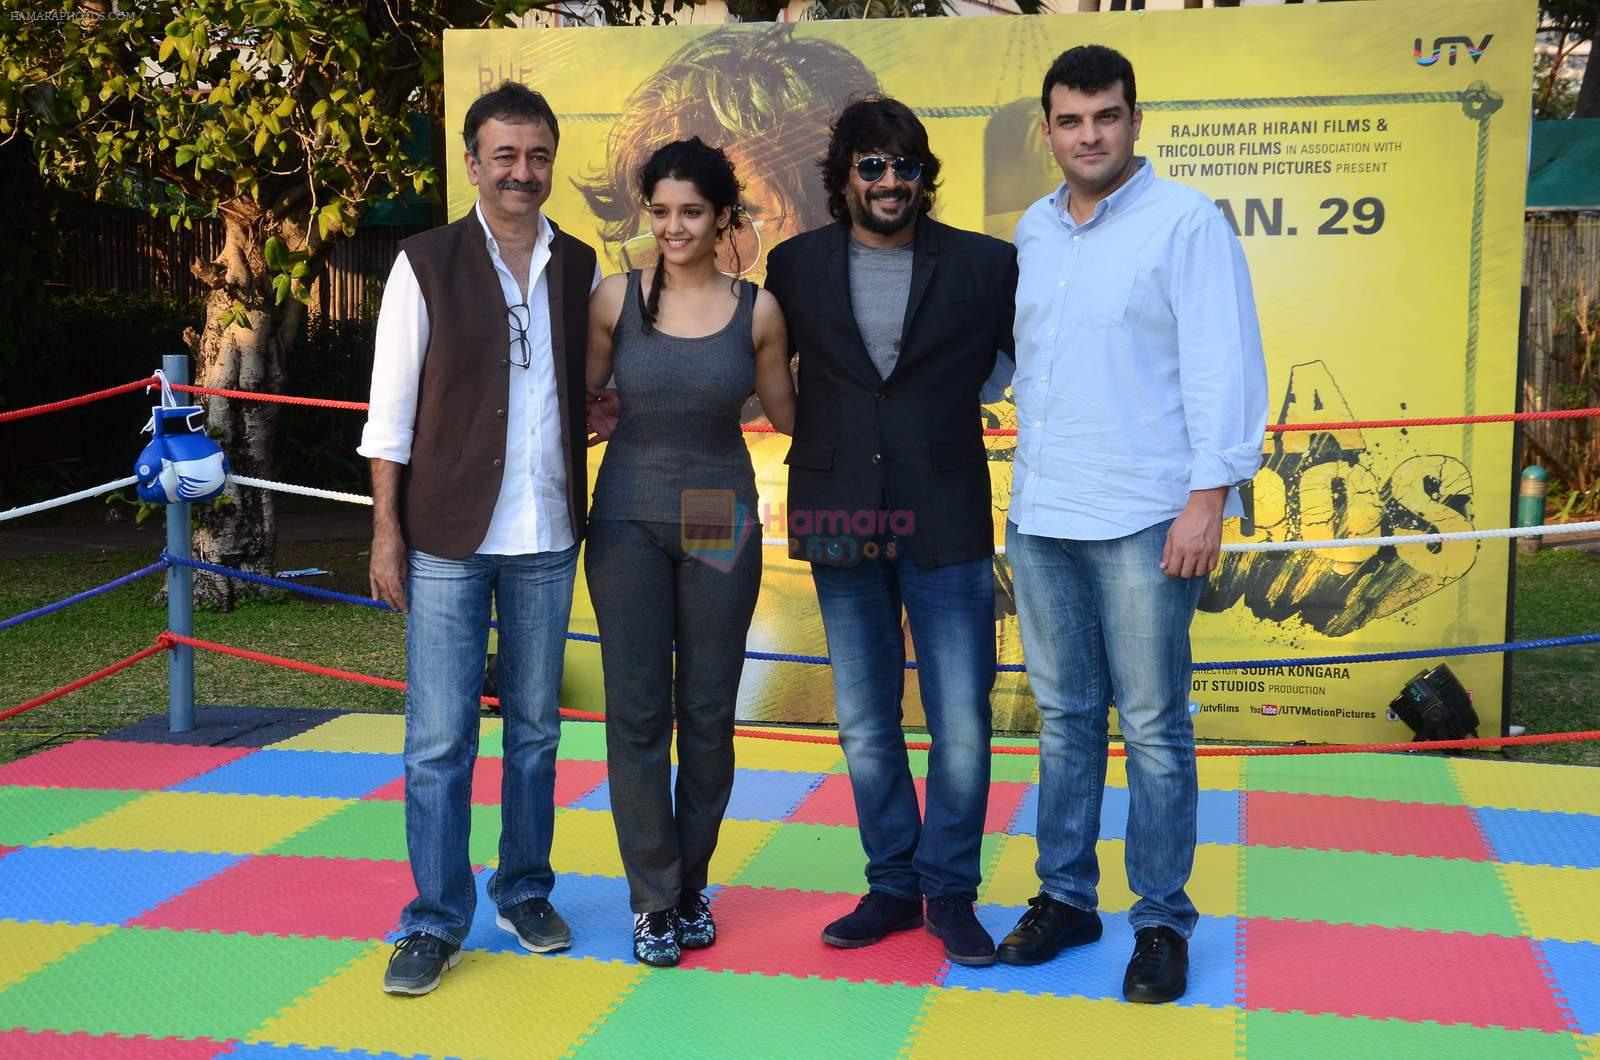 Rajkumar Hirani, Ritika Singh, R Madhavan, Siddharth Roy Kapur at Saala Khadoos film launch on 11th Jan 2016